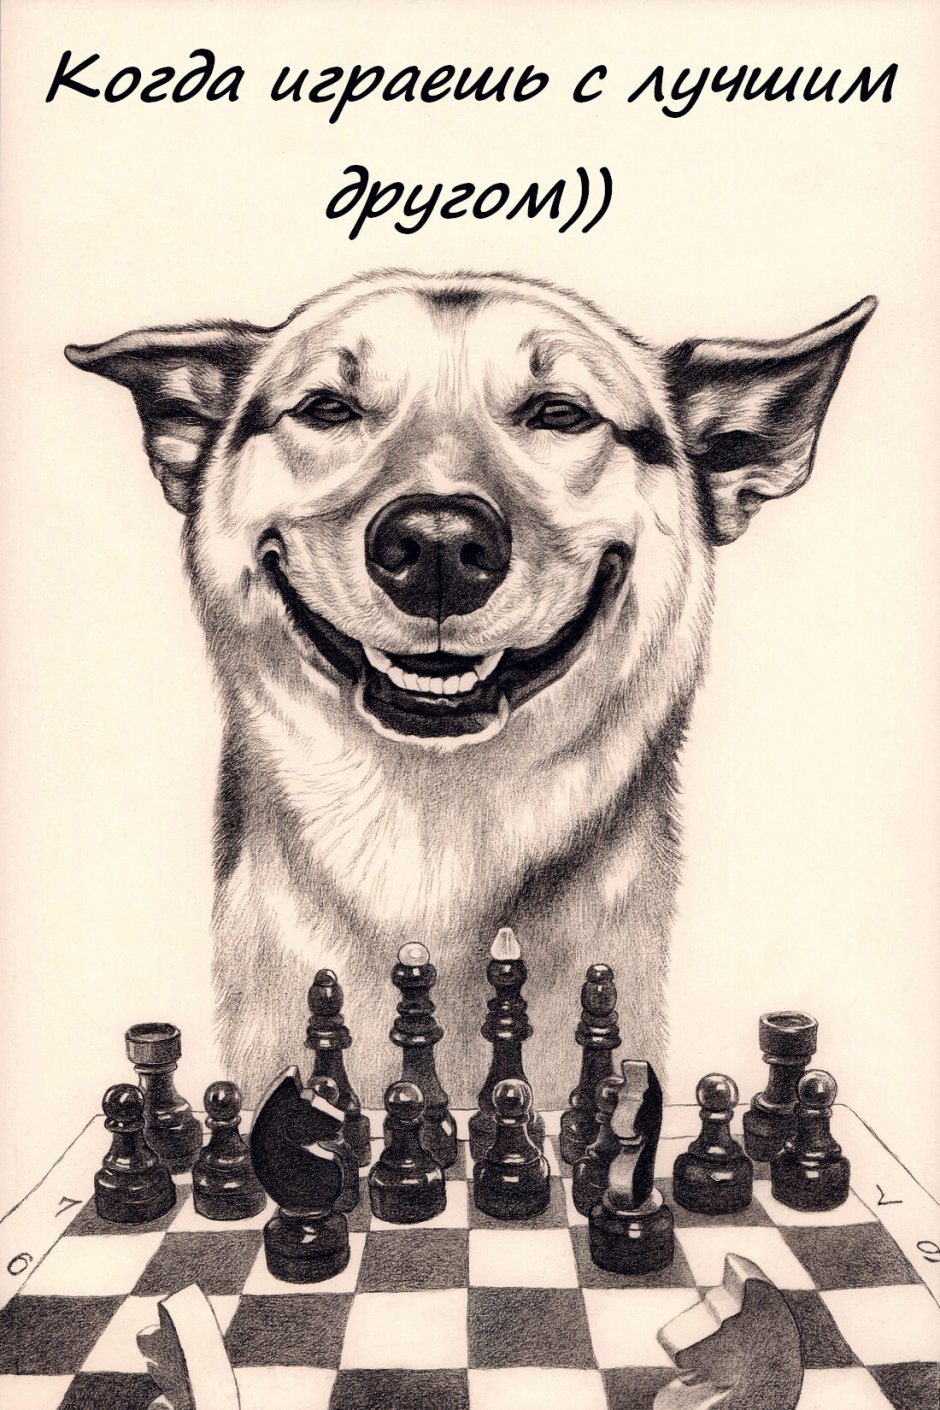 Всемирный день шахмат